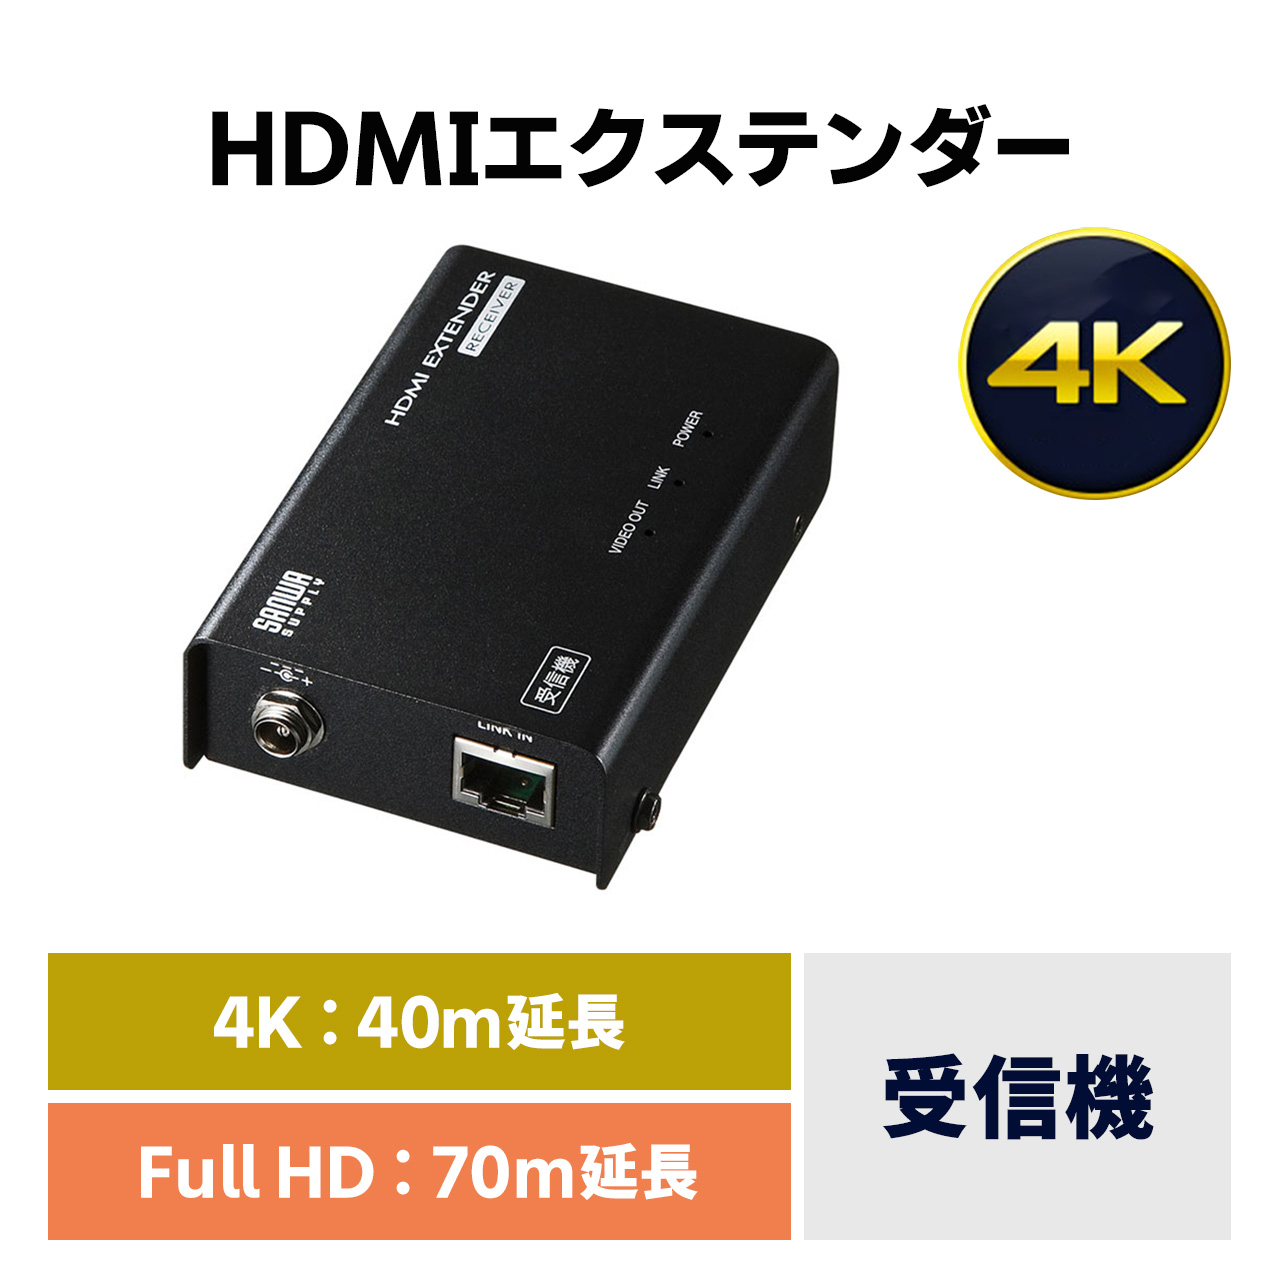 HDMI エクステンダー LAN 変換 延長器 最大70m 高画質 4K 60Hz フルHD 対応 受信機 単品 増設 高音質 LANケーブル 接続  VGA-EXHDLTR